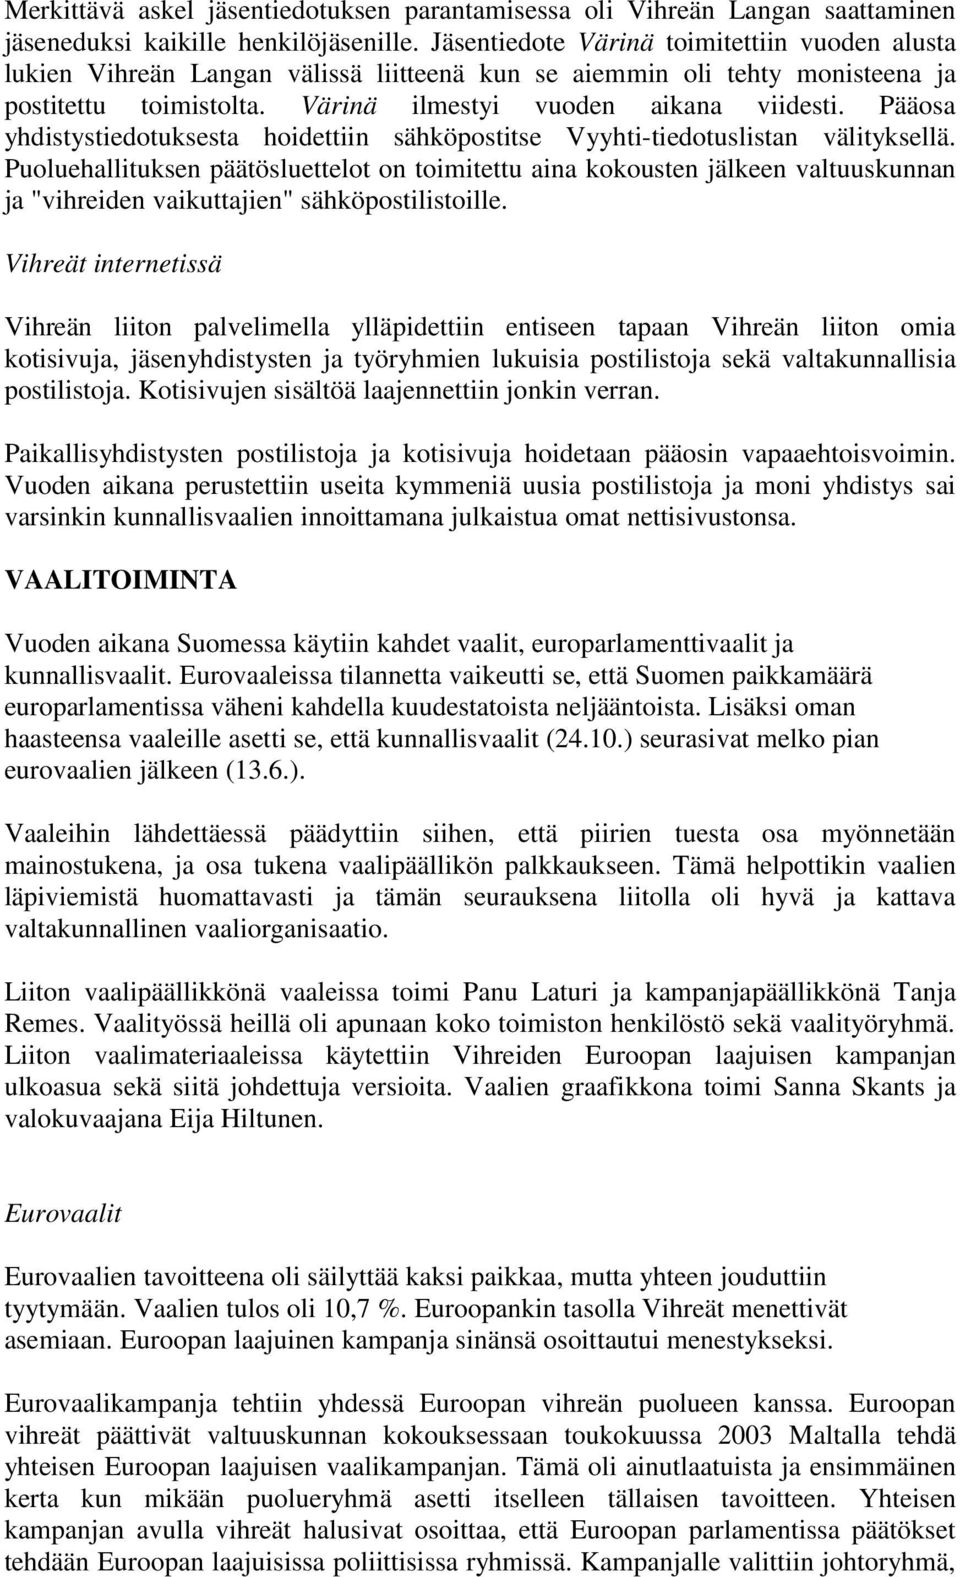 Pääosa yhdistystiedotuksesta hoidettiin sähköpostitse Vyyhti-tiedotuslistan välityksellä.